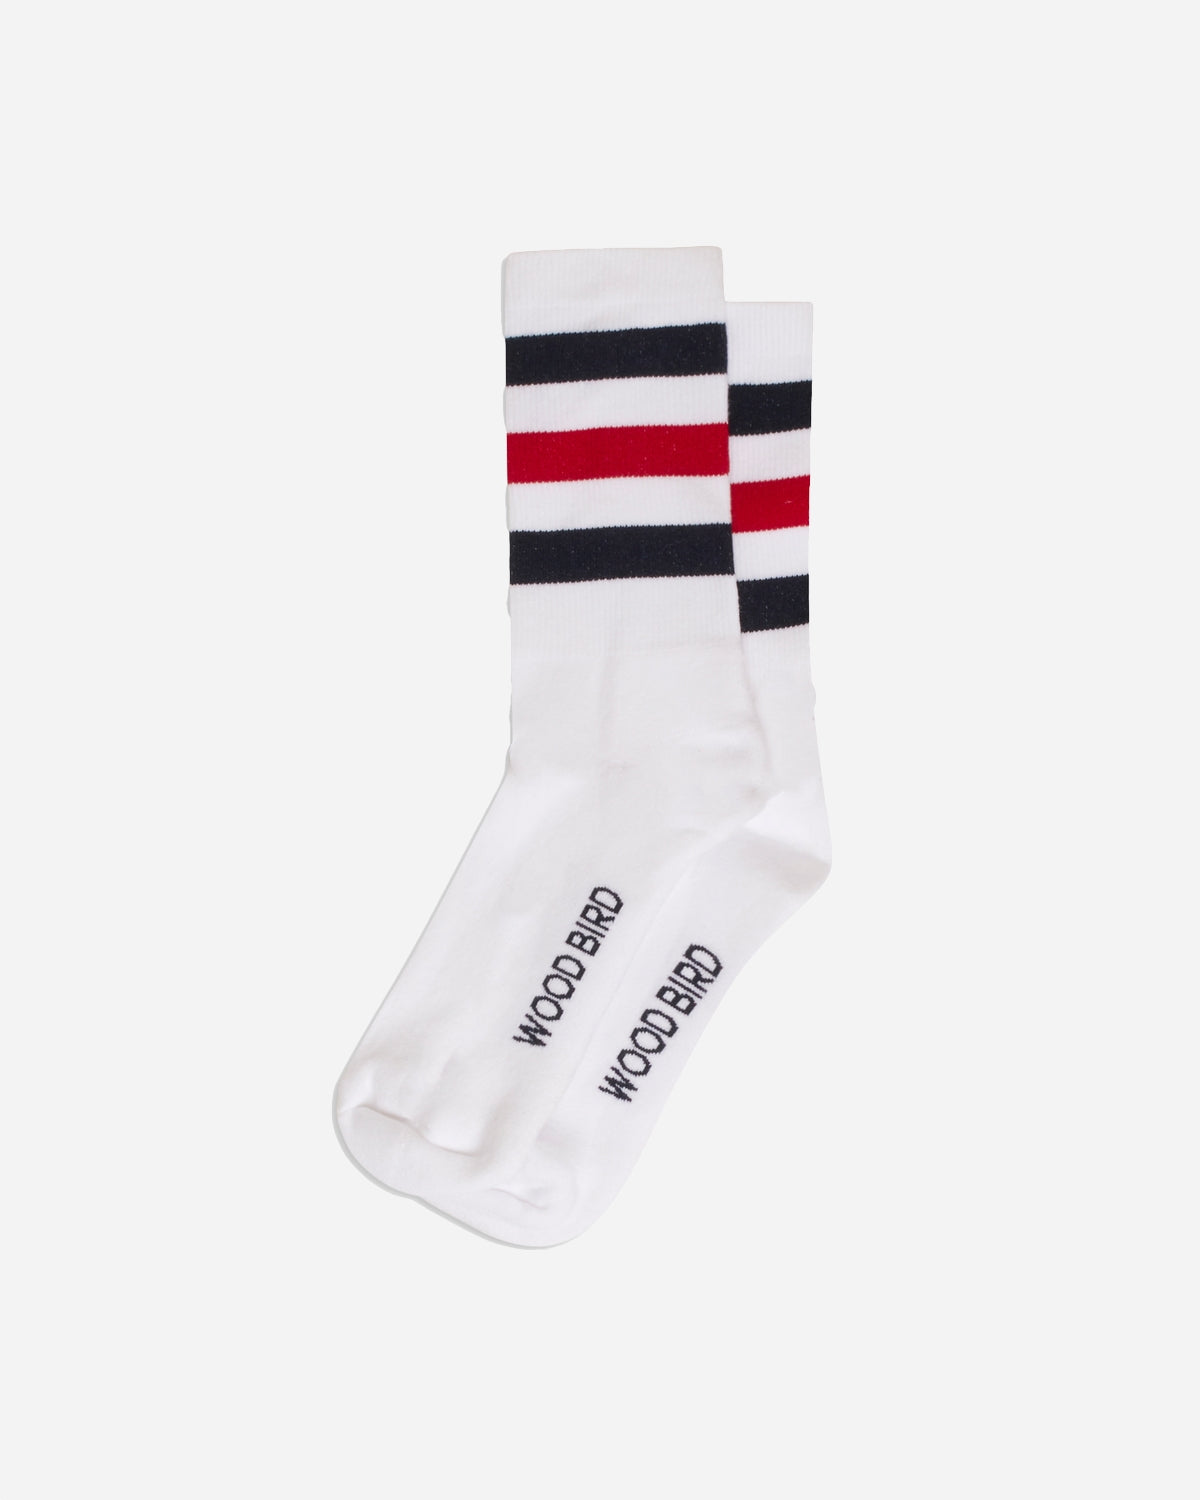 Tennis Socks - White/Navy/Red